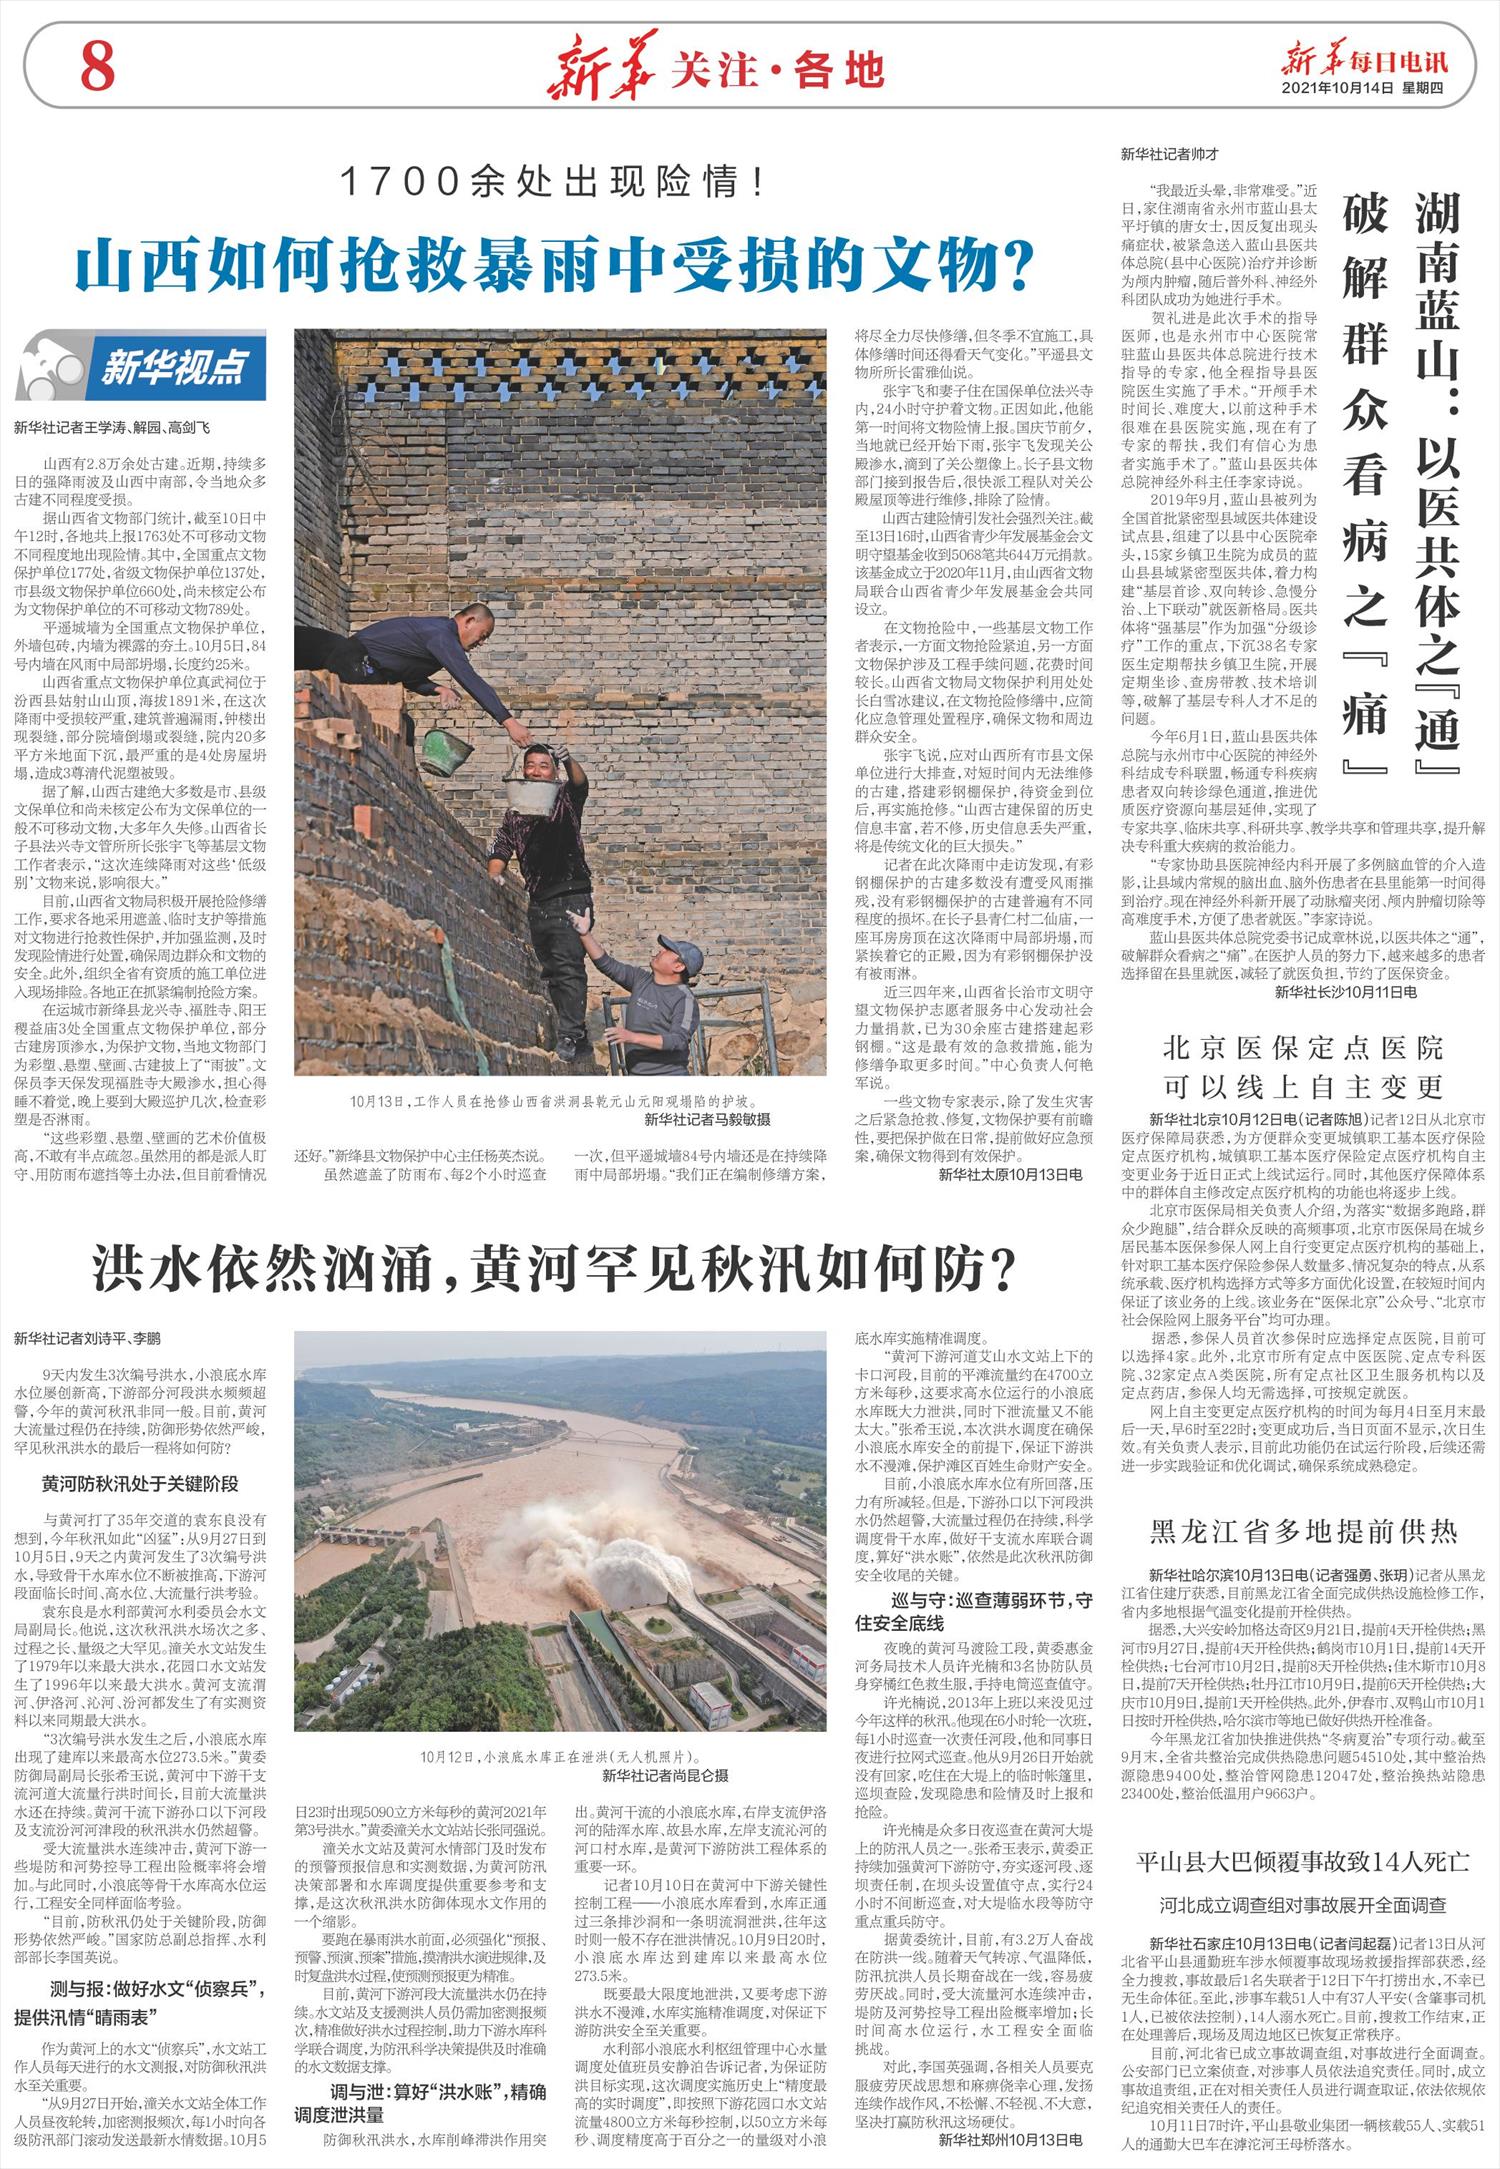 新华每日电讯-微报纸-2021年10月14日